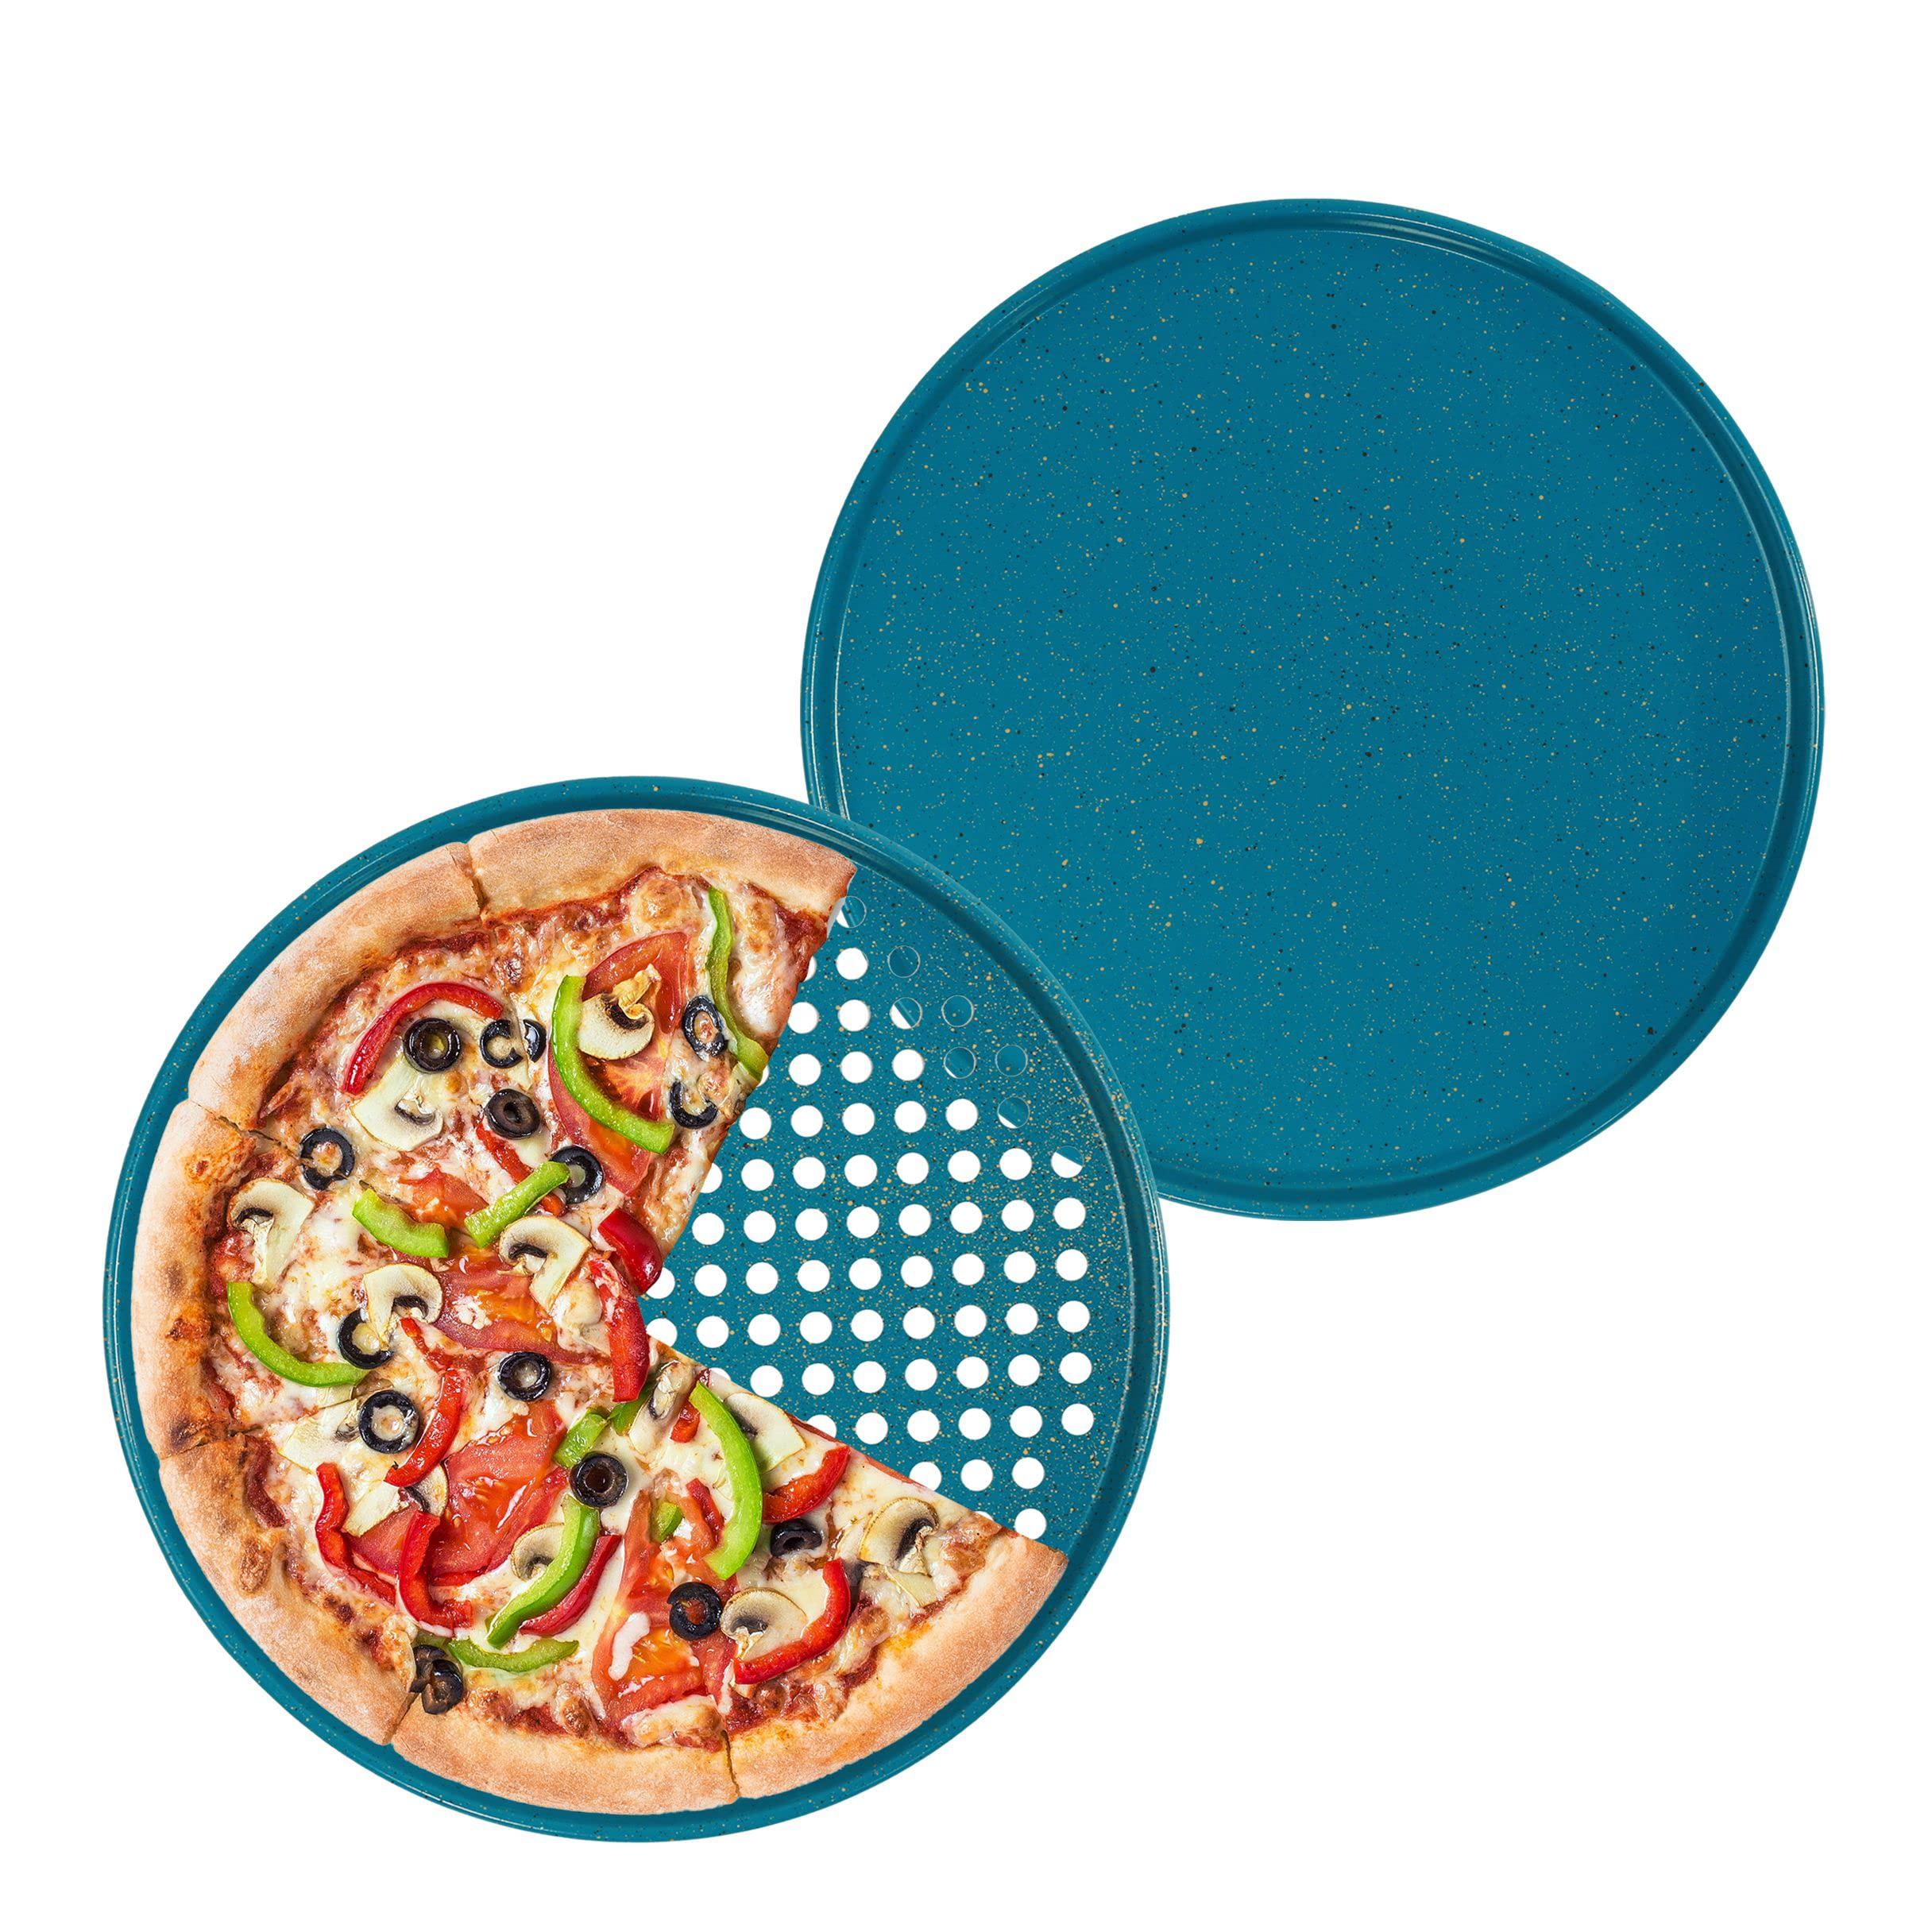 casaware 2pc ultimate pizza pan set, (1) ceramic coated nonstick 12-inch pizza pan, (1) 12-inch ceramic coated nonstick perfo